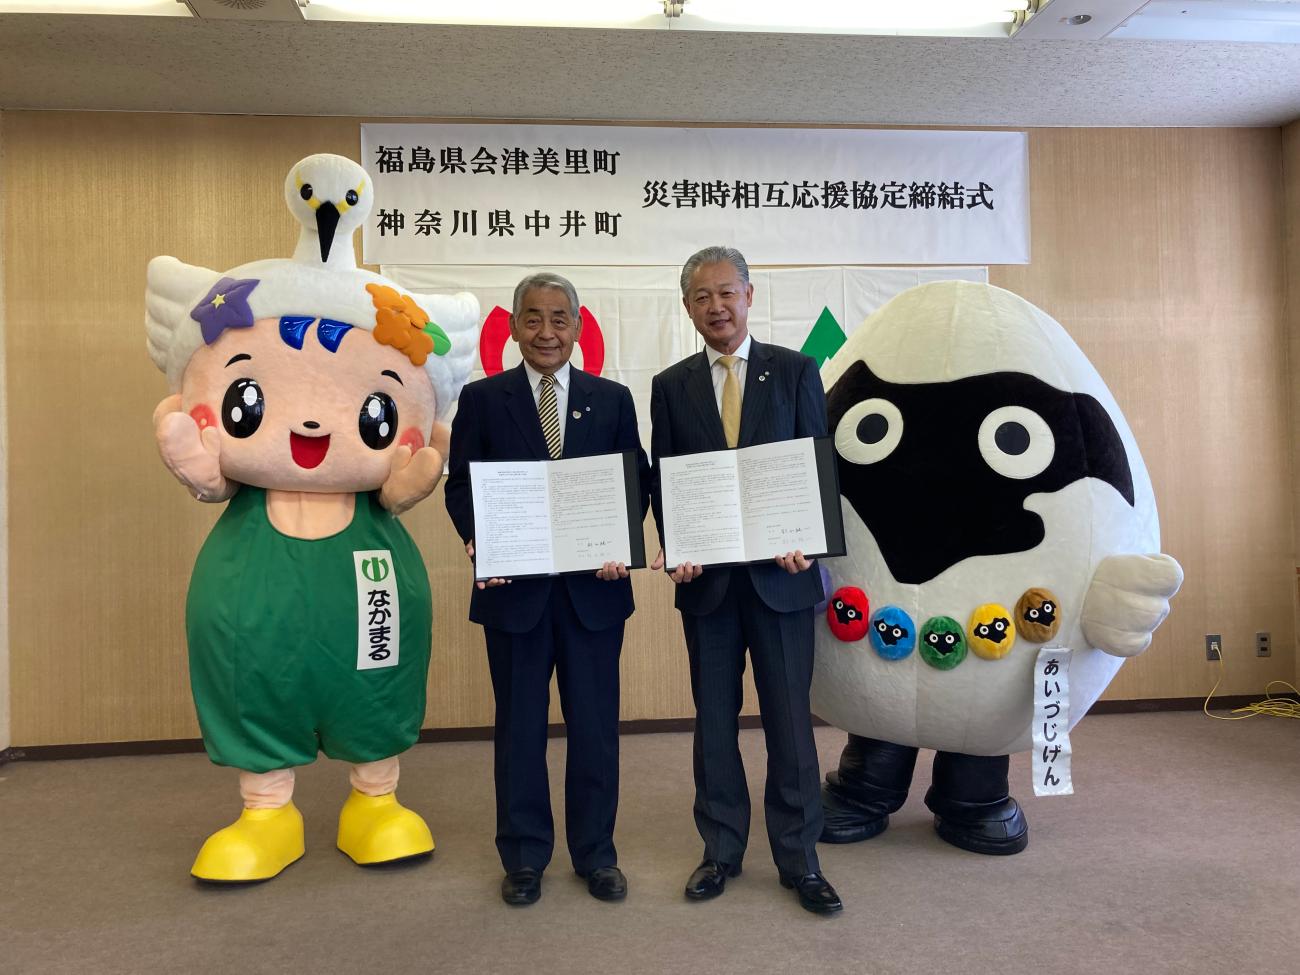 「なかまる」と「あいづじげん」のマスコットキャラクターの間に中井町の町長と並んで記念撮影をしている町長の写真